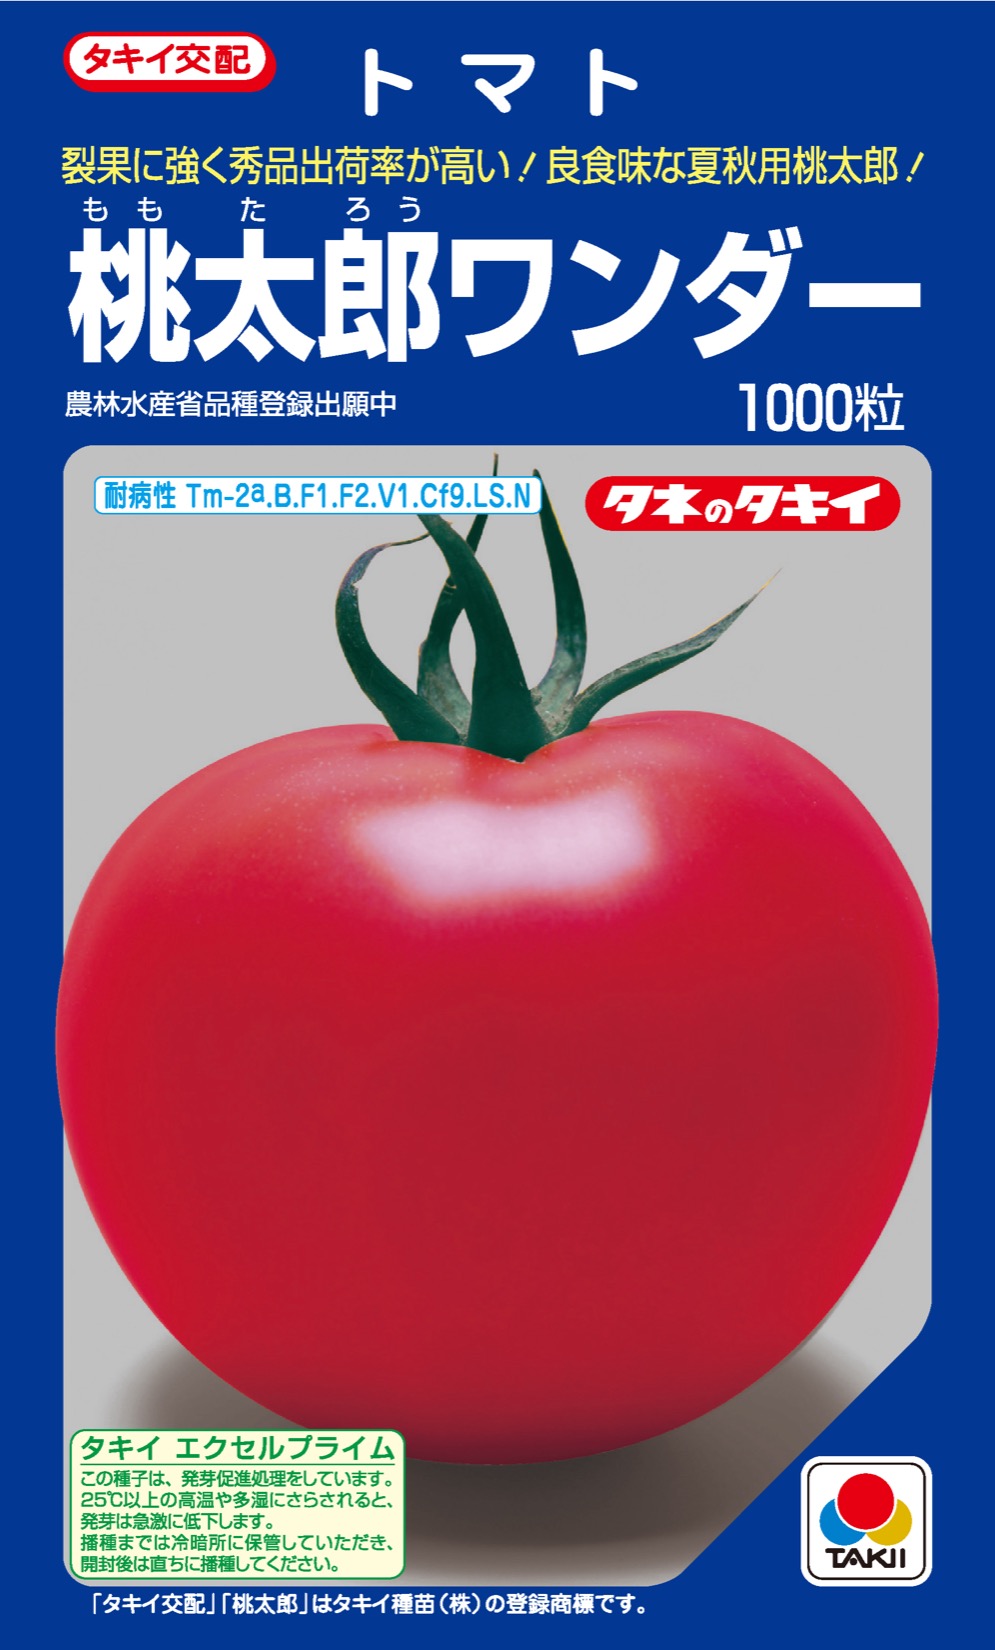 【トマト種子】桃太郎ワンダー_1000粒